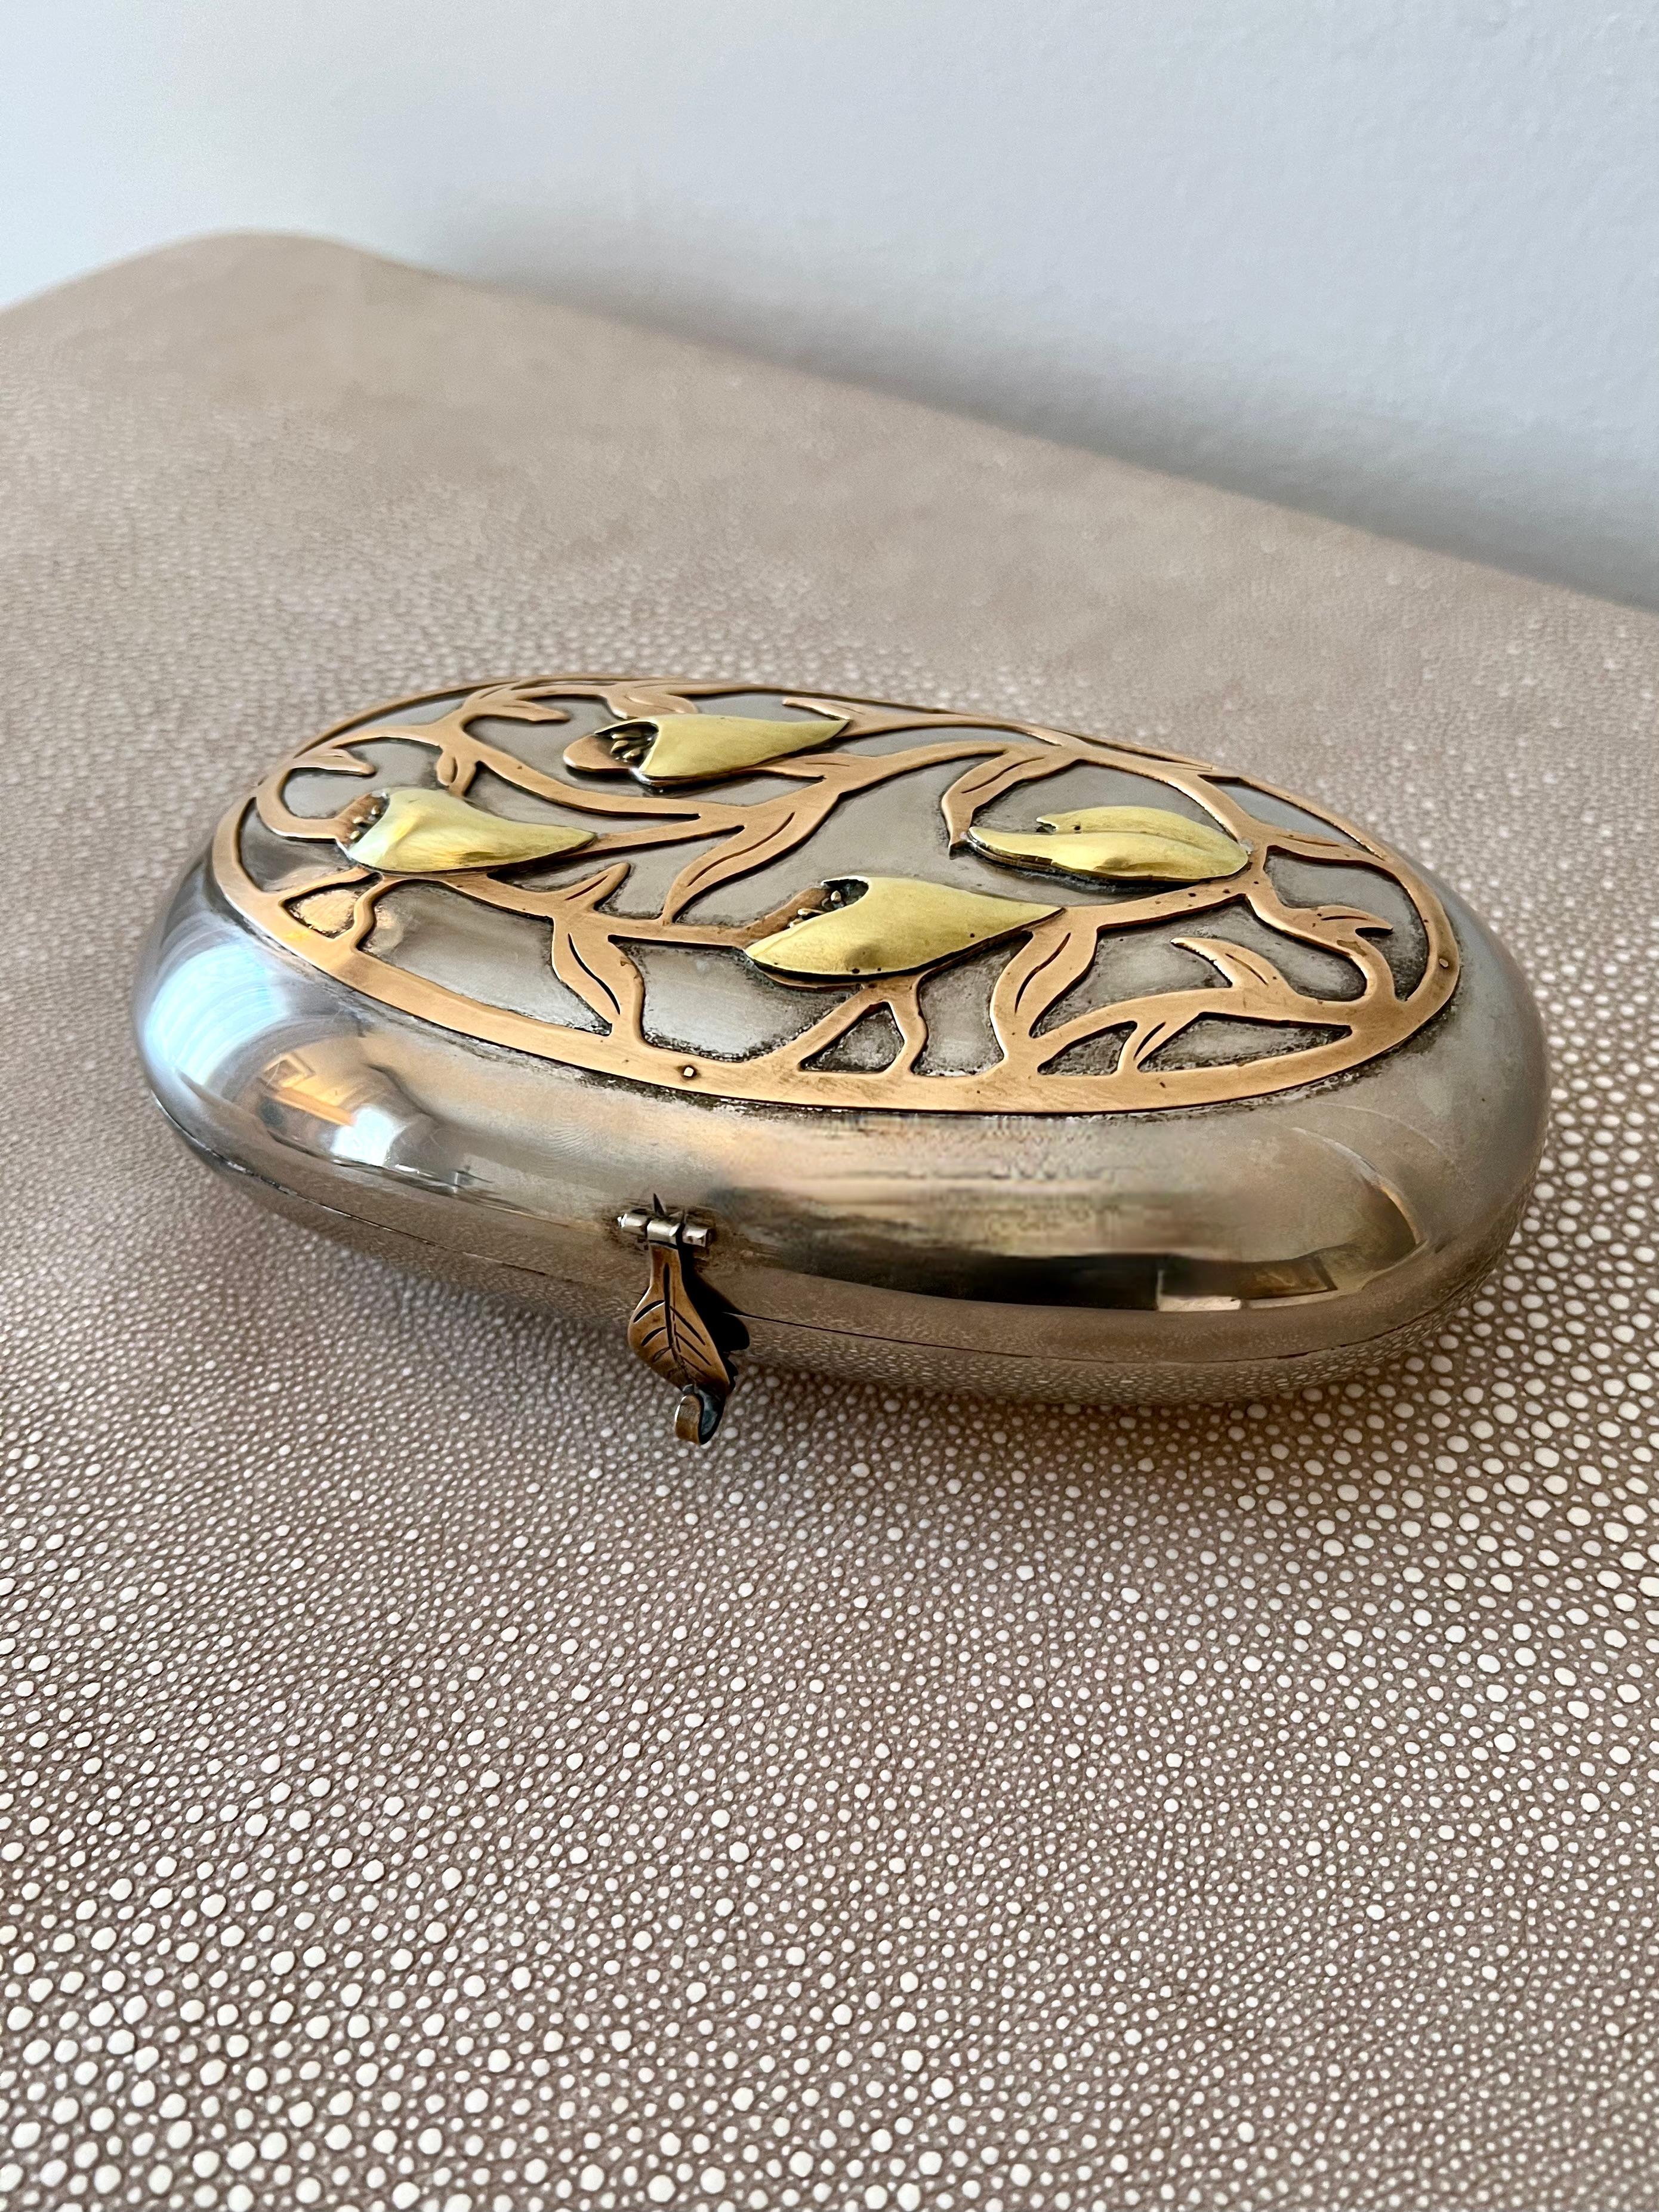 20th Century Art Nouveau Mixed Metal Detail Decorative Box